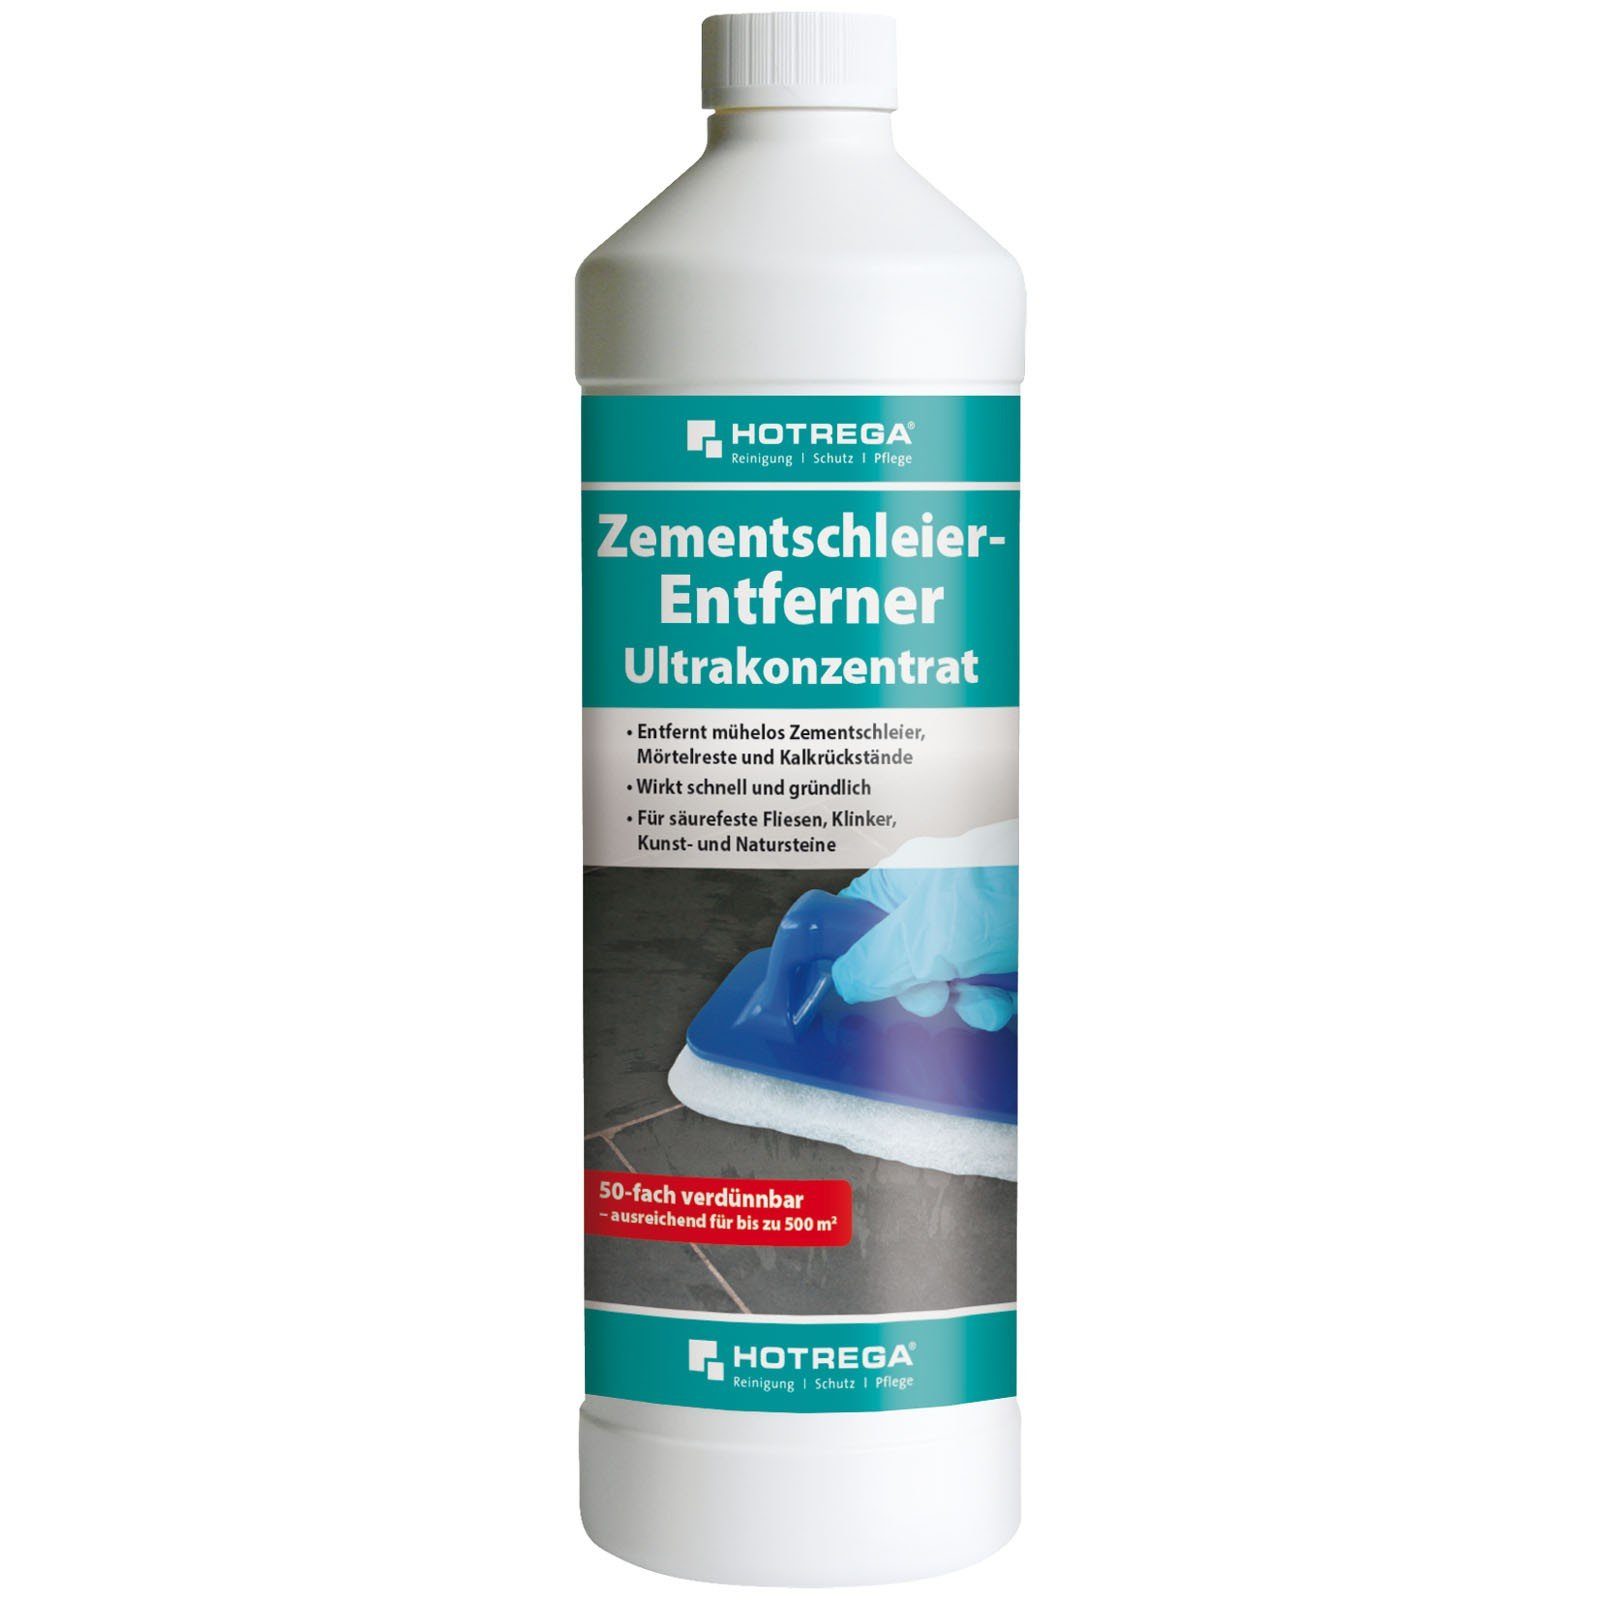 Reinigungskonzentrat 1 Entferner HOTREGA® Zementschleier Liter Ultrakonzentrat